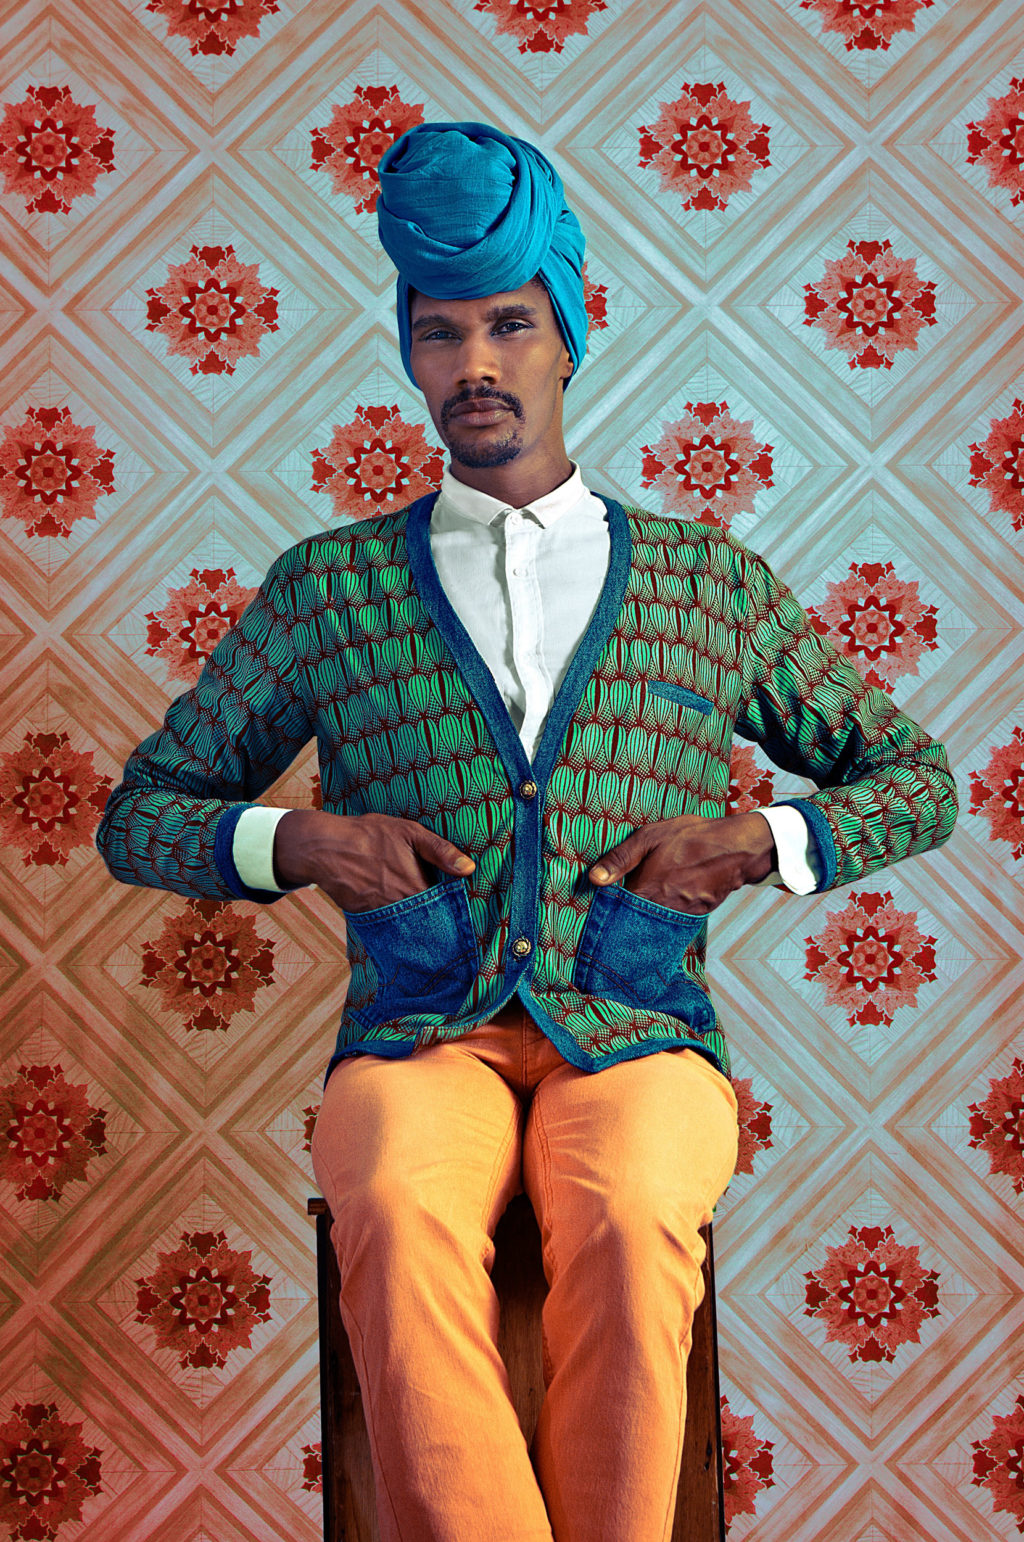 Porträtt från utställningen "The Studio of Vanities" med fotografier av den senegalesiska fotografen Omar Victor Diop (© Omar Victor Diop, Courtesy Galerie MAGNIN-A, Paris.)